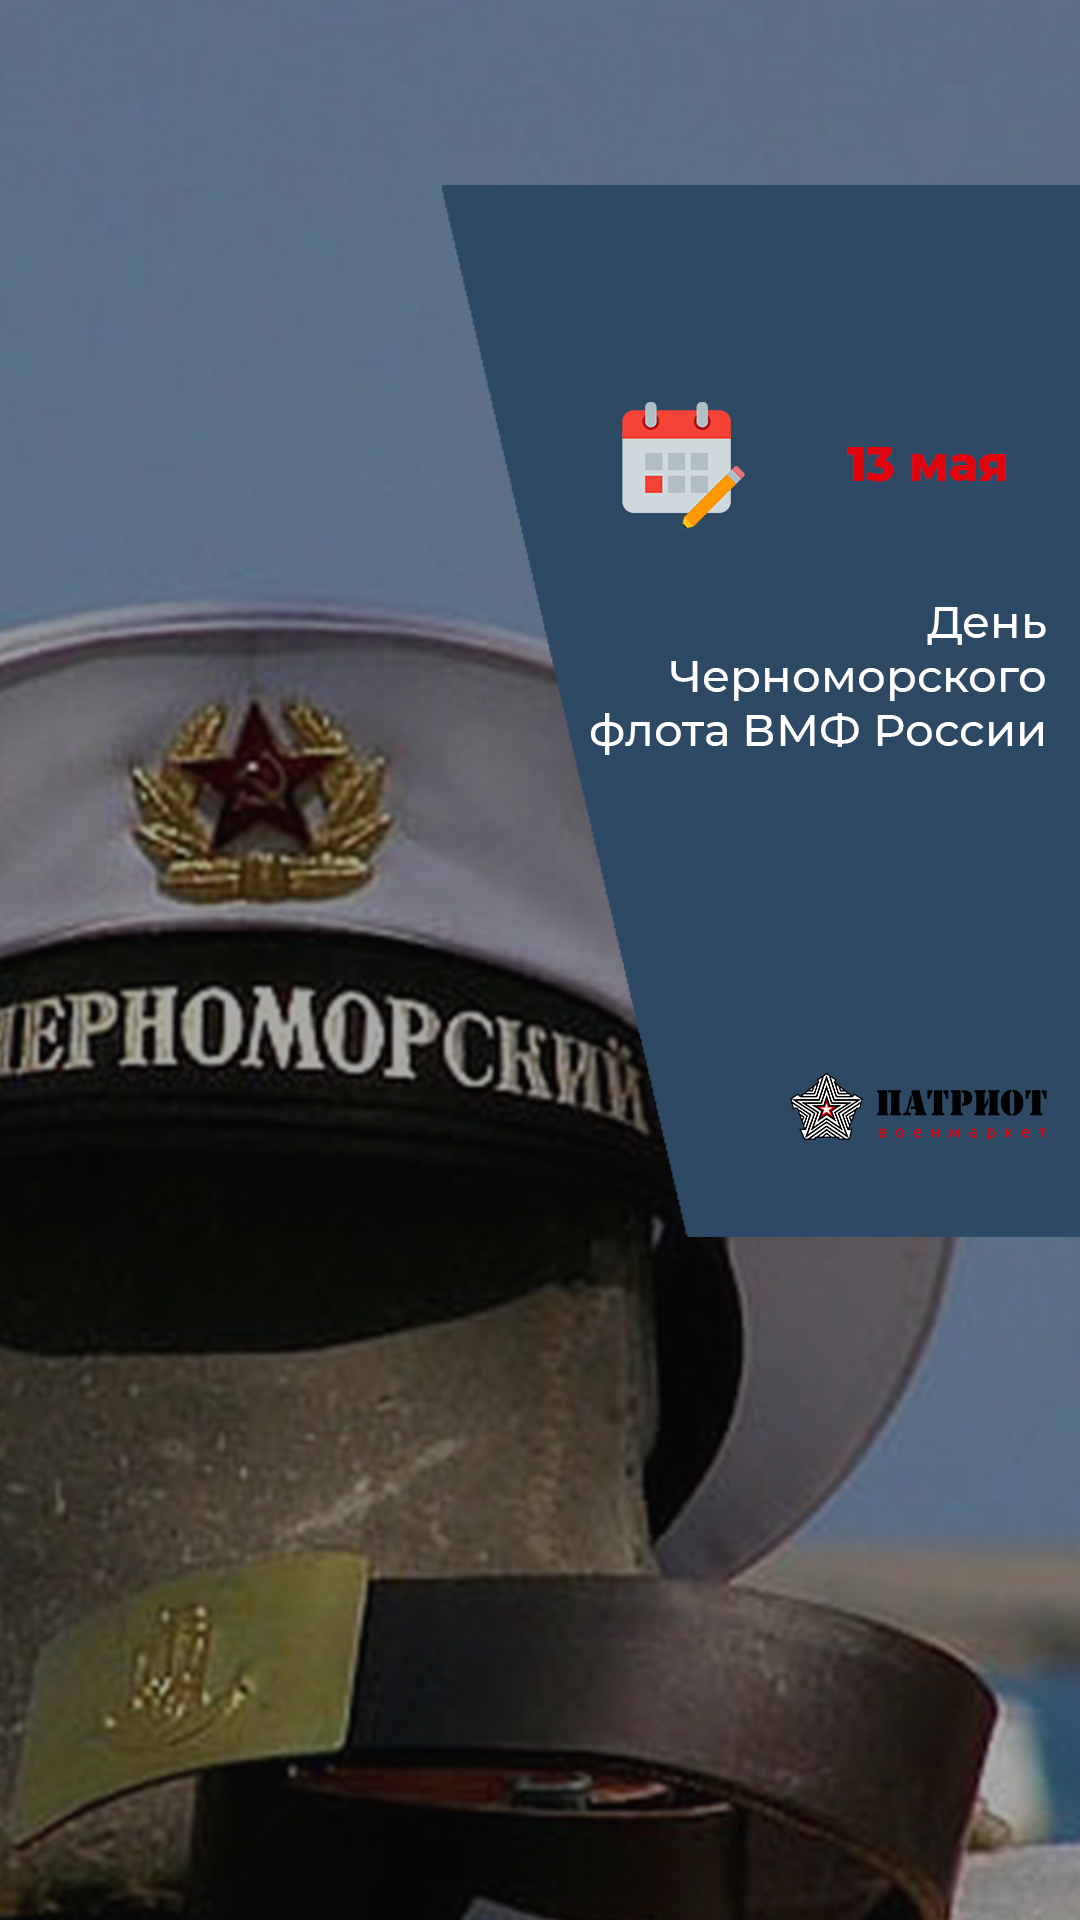 13 мая - День Черноморского флота ВМФ России